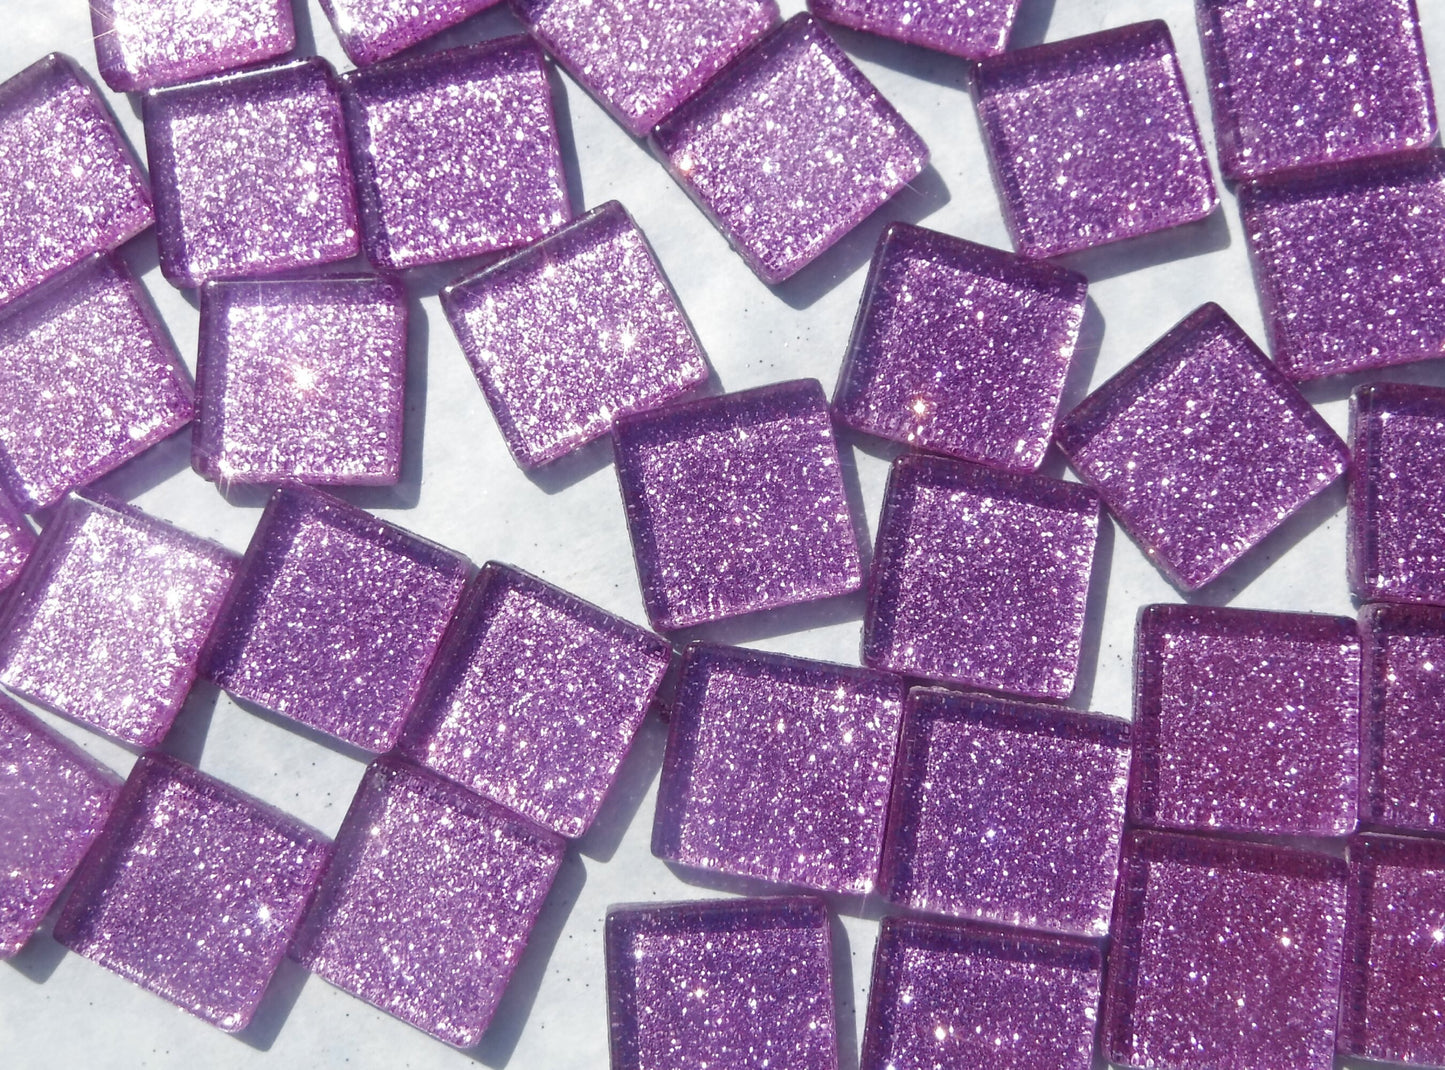 Light Purple Glitter Tiles - 20mm Mosaic Tiles - 25 Metallic Glass Tiles in Lavender